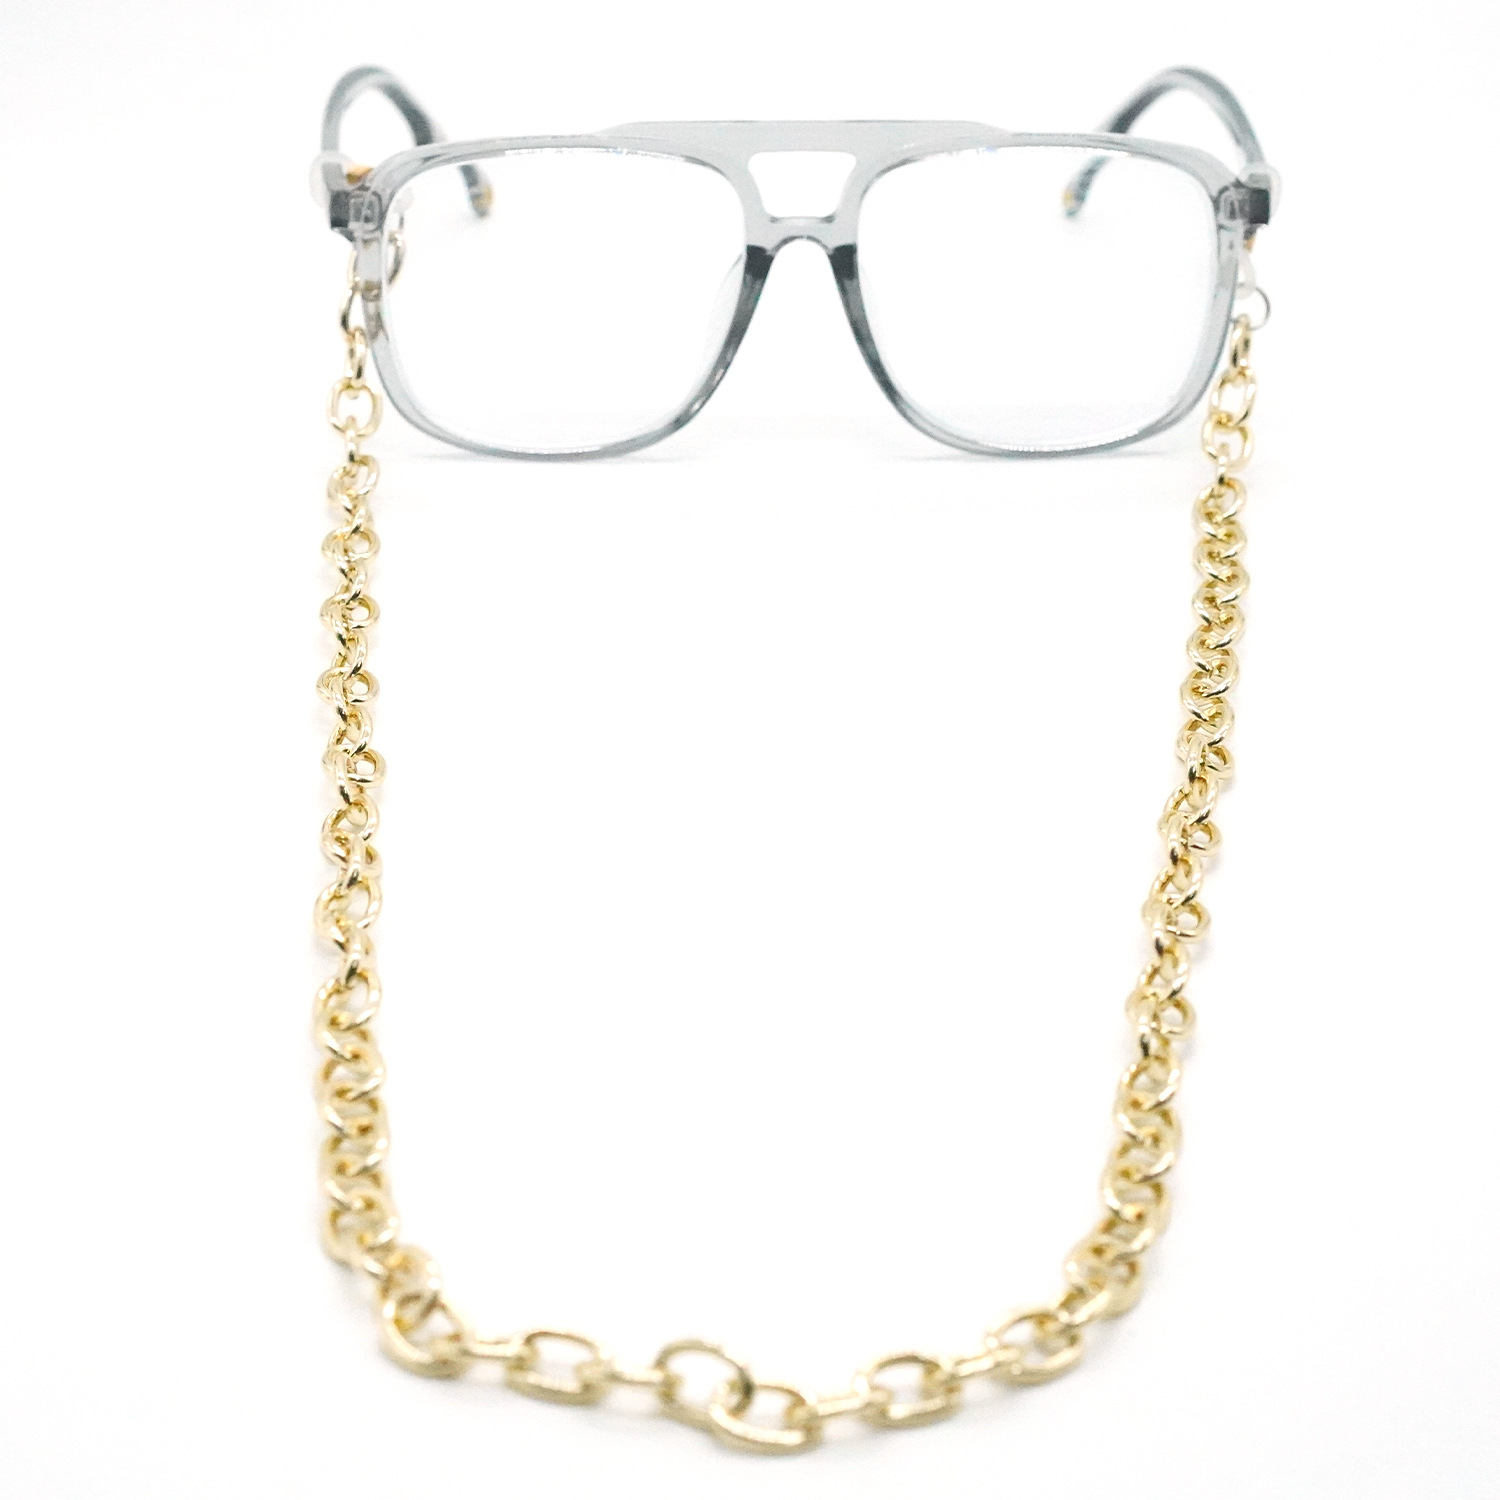 Chain đeo gọng kính thời trang phong cách Âu Mỹ street style hip hopr